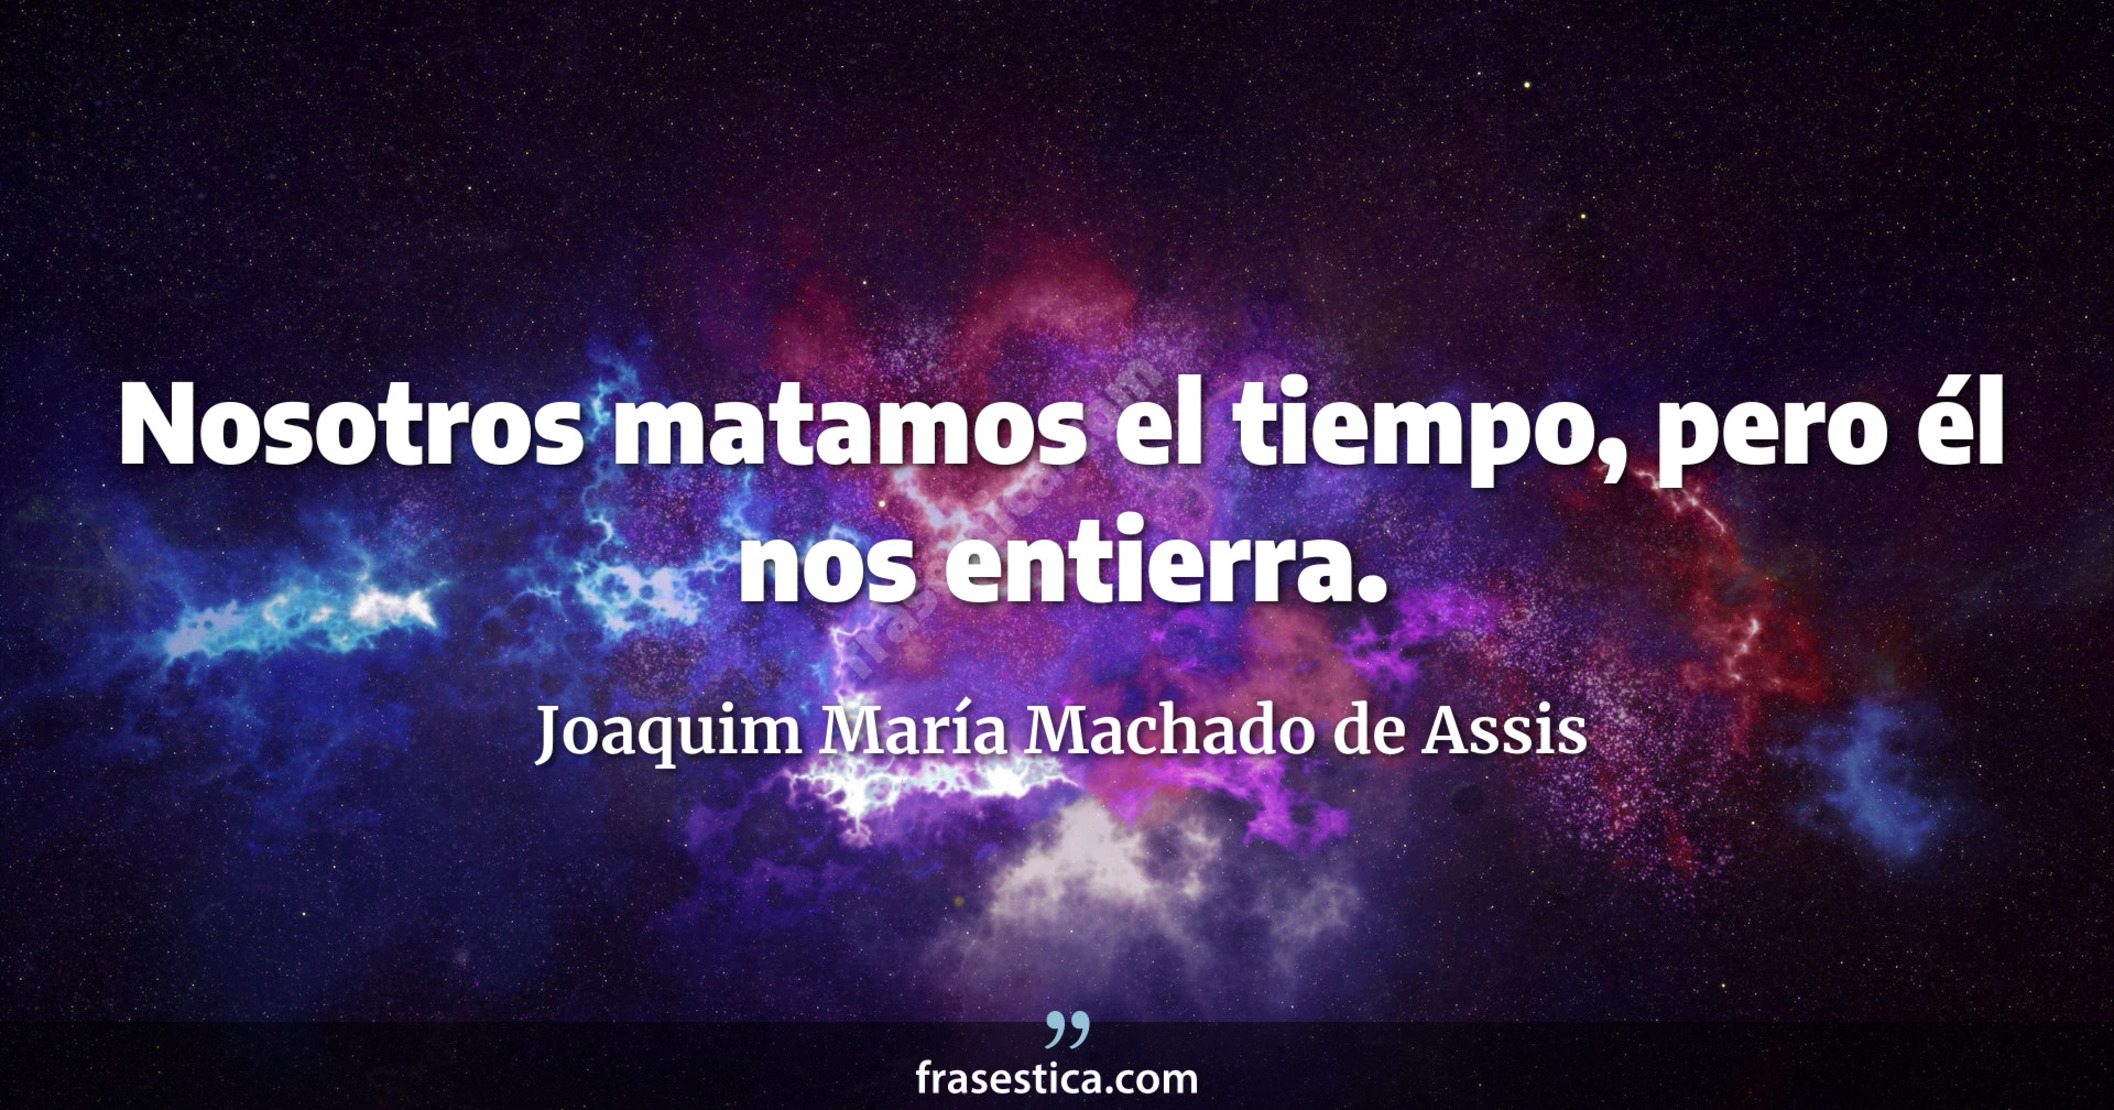 Nosotros matamos el tiempo, pero él nos entierra. - Joaquim María Machado de Assis